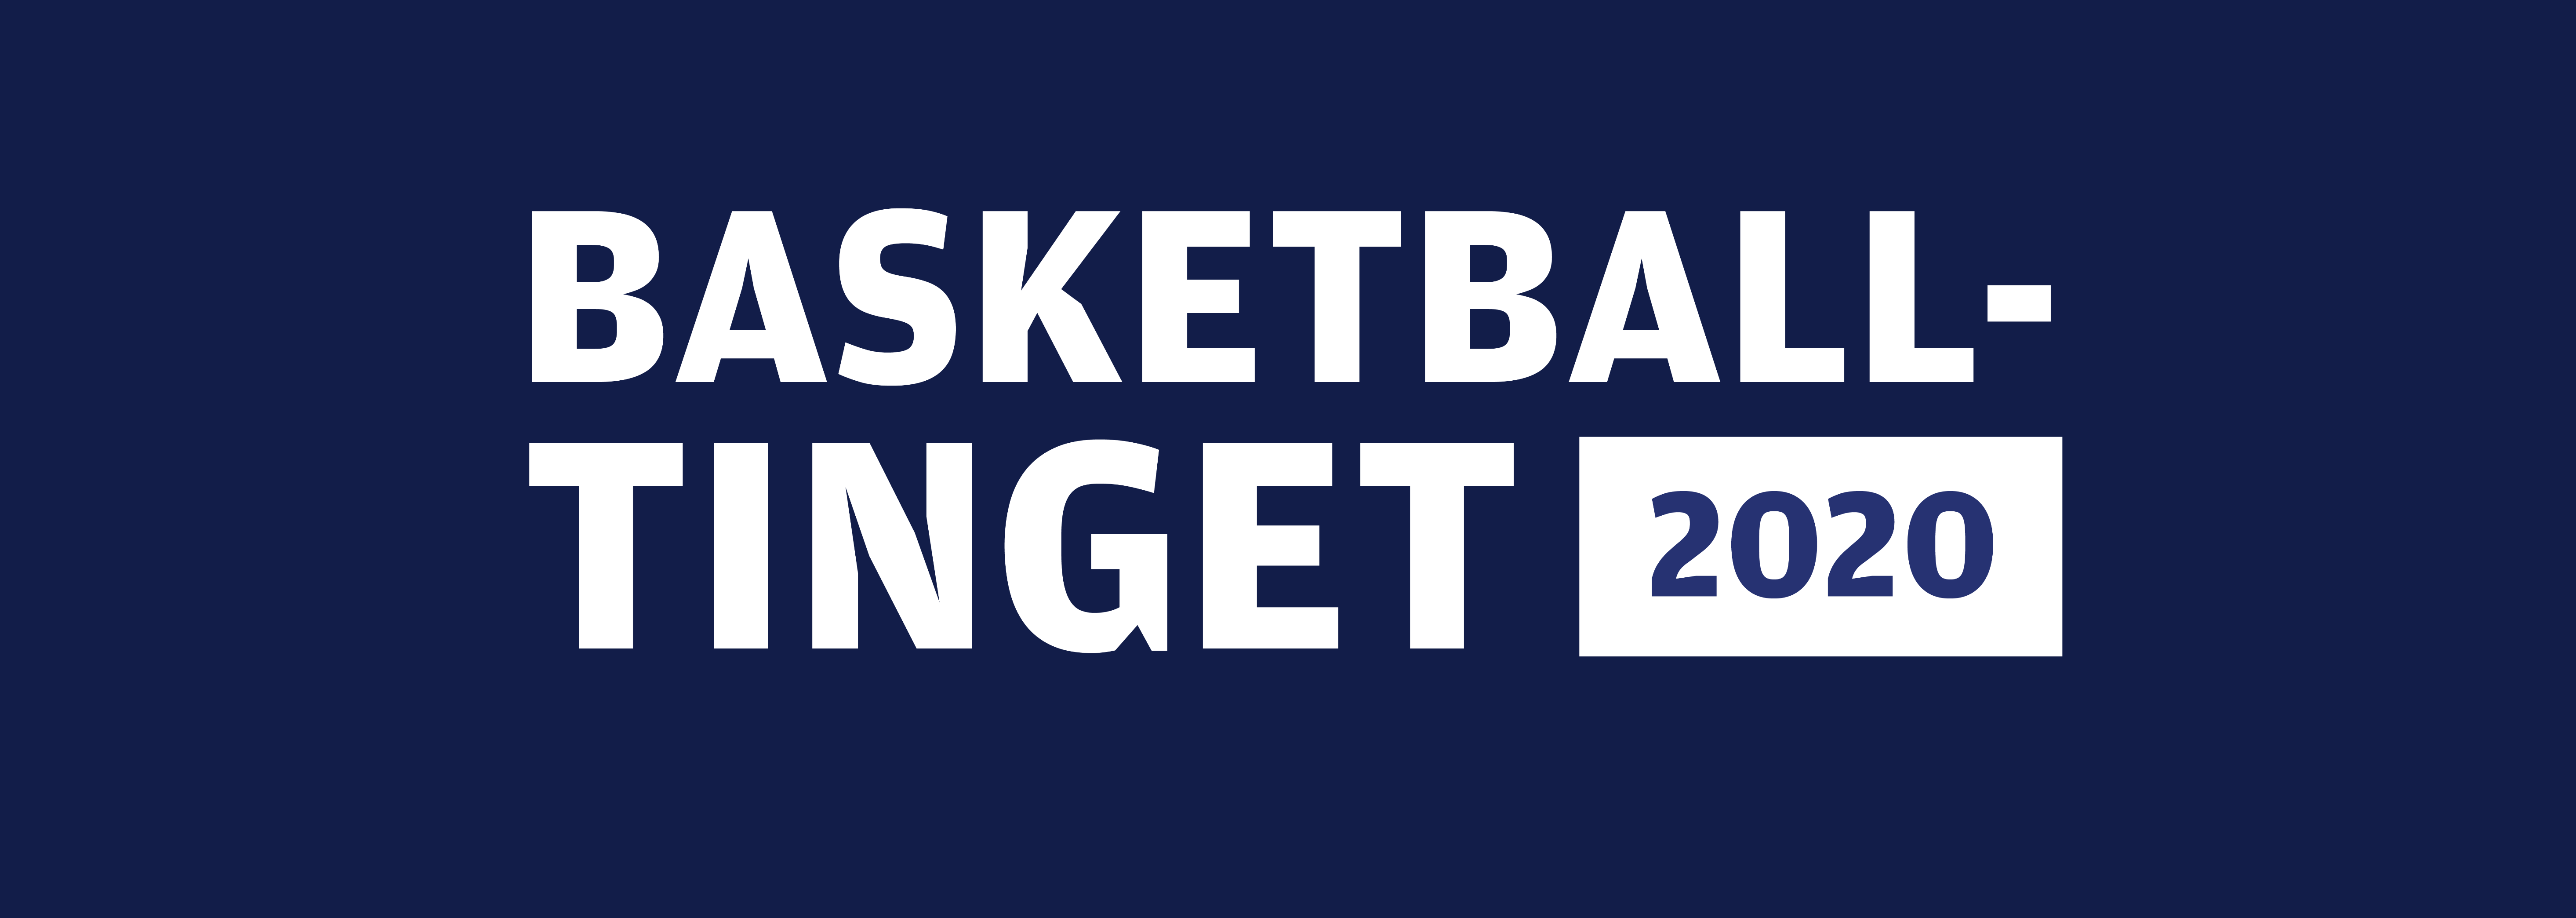 Basketballtinget 2020 tilpasset (1).png